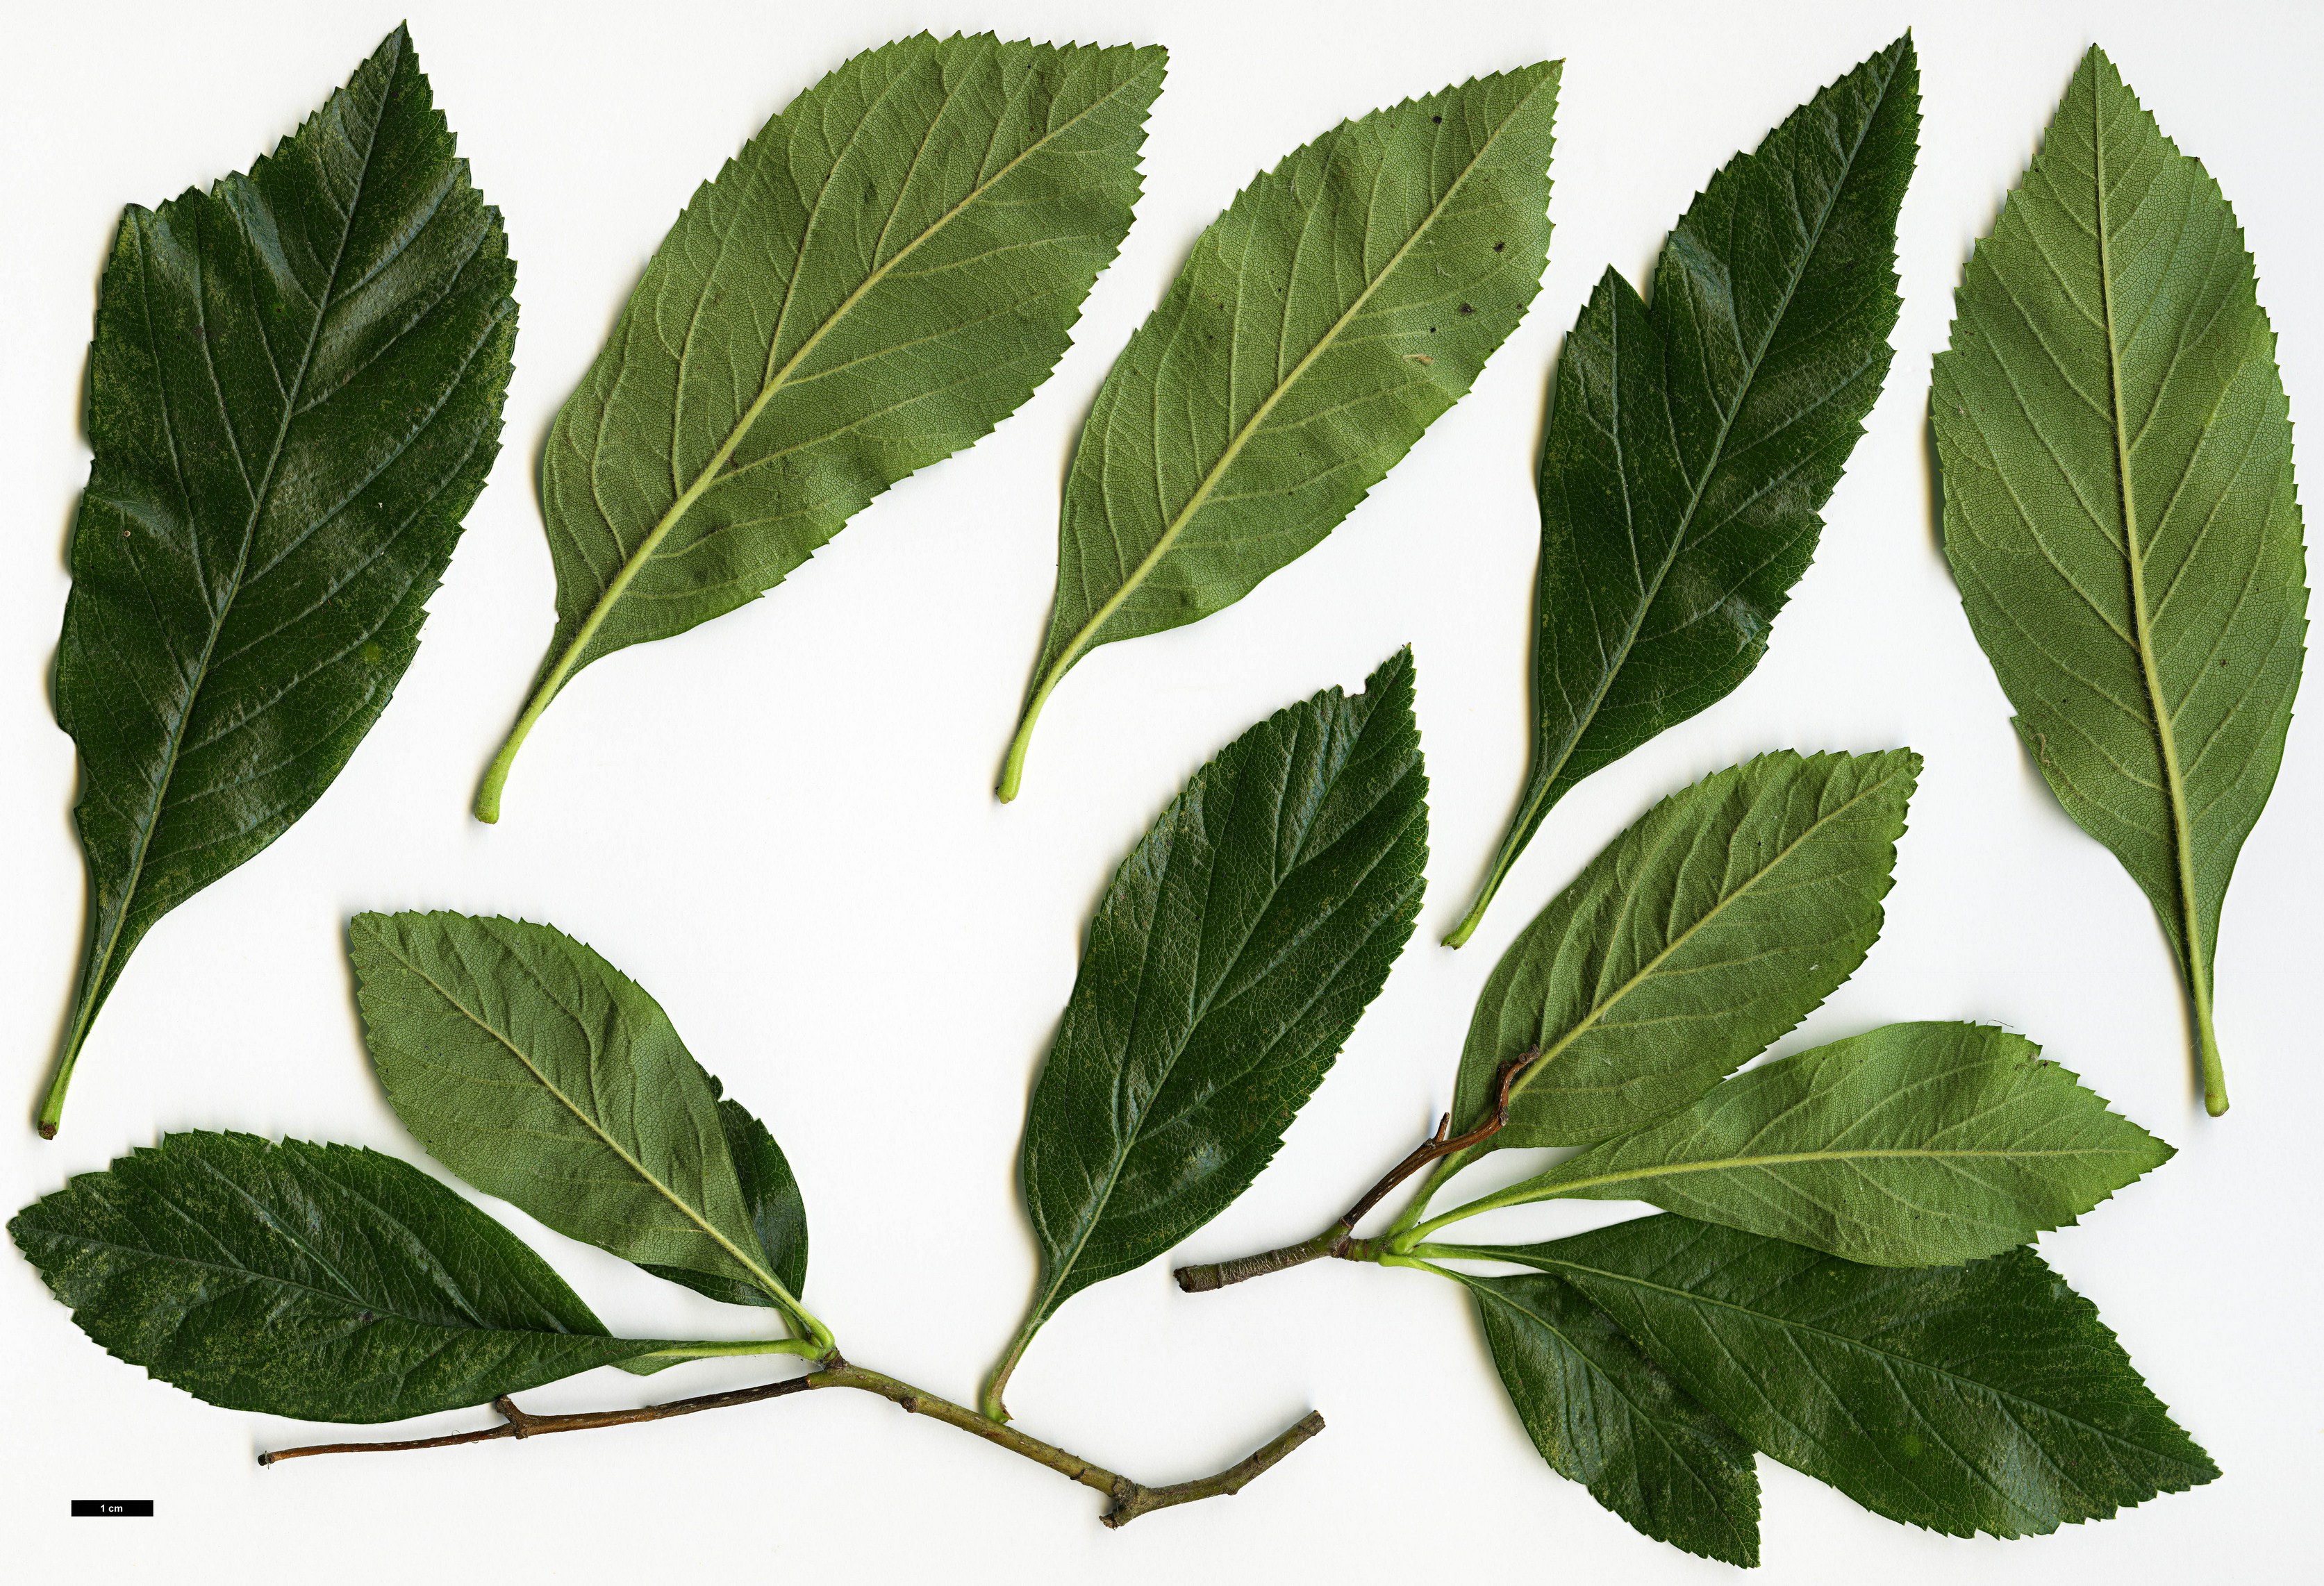 High resolution image: Family: Rosaceae - Genus: Crataegus - Taxon: ×lavalleei (C.crus-gallii × C.pubescens stipulacea)